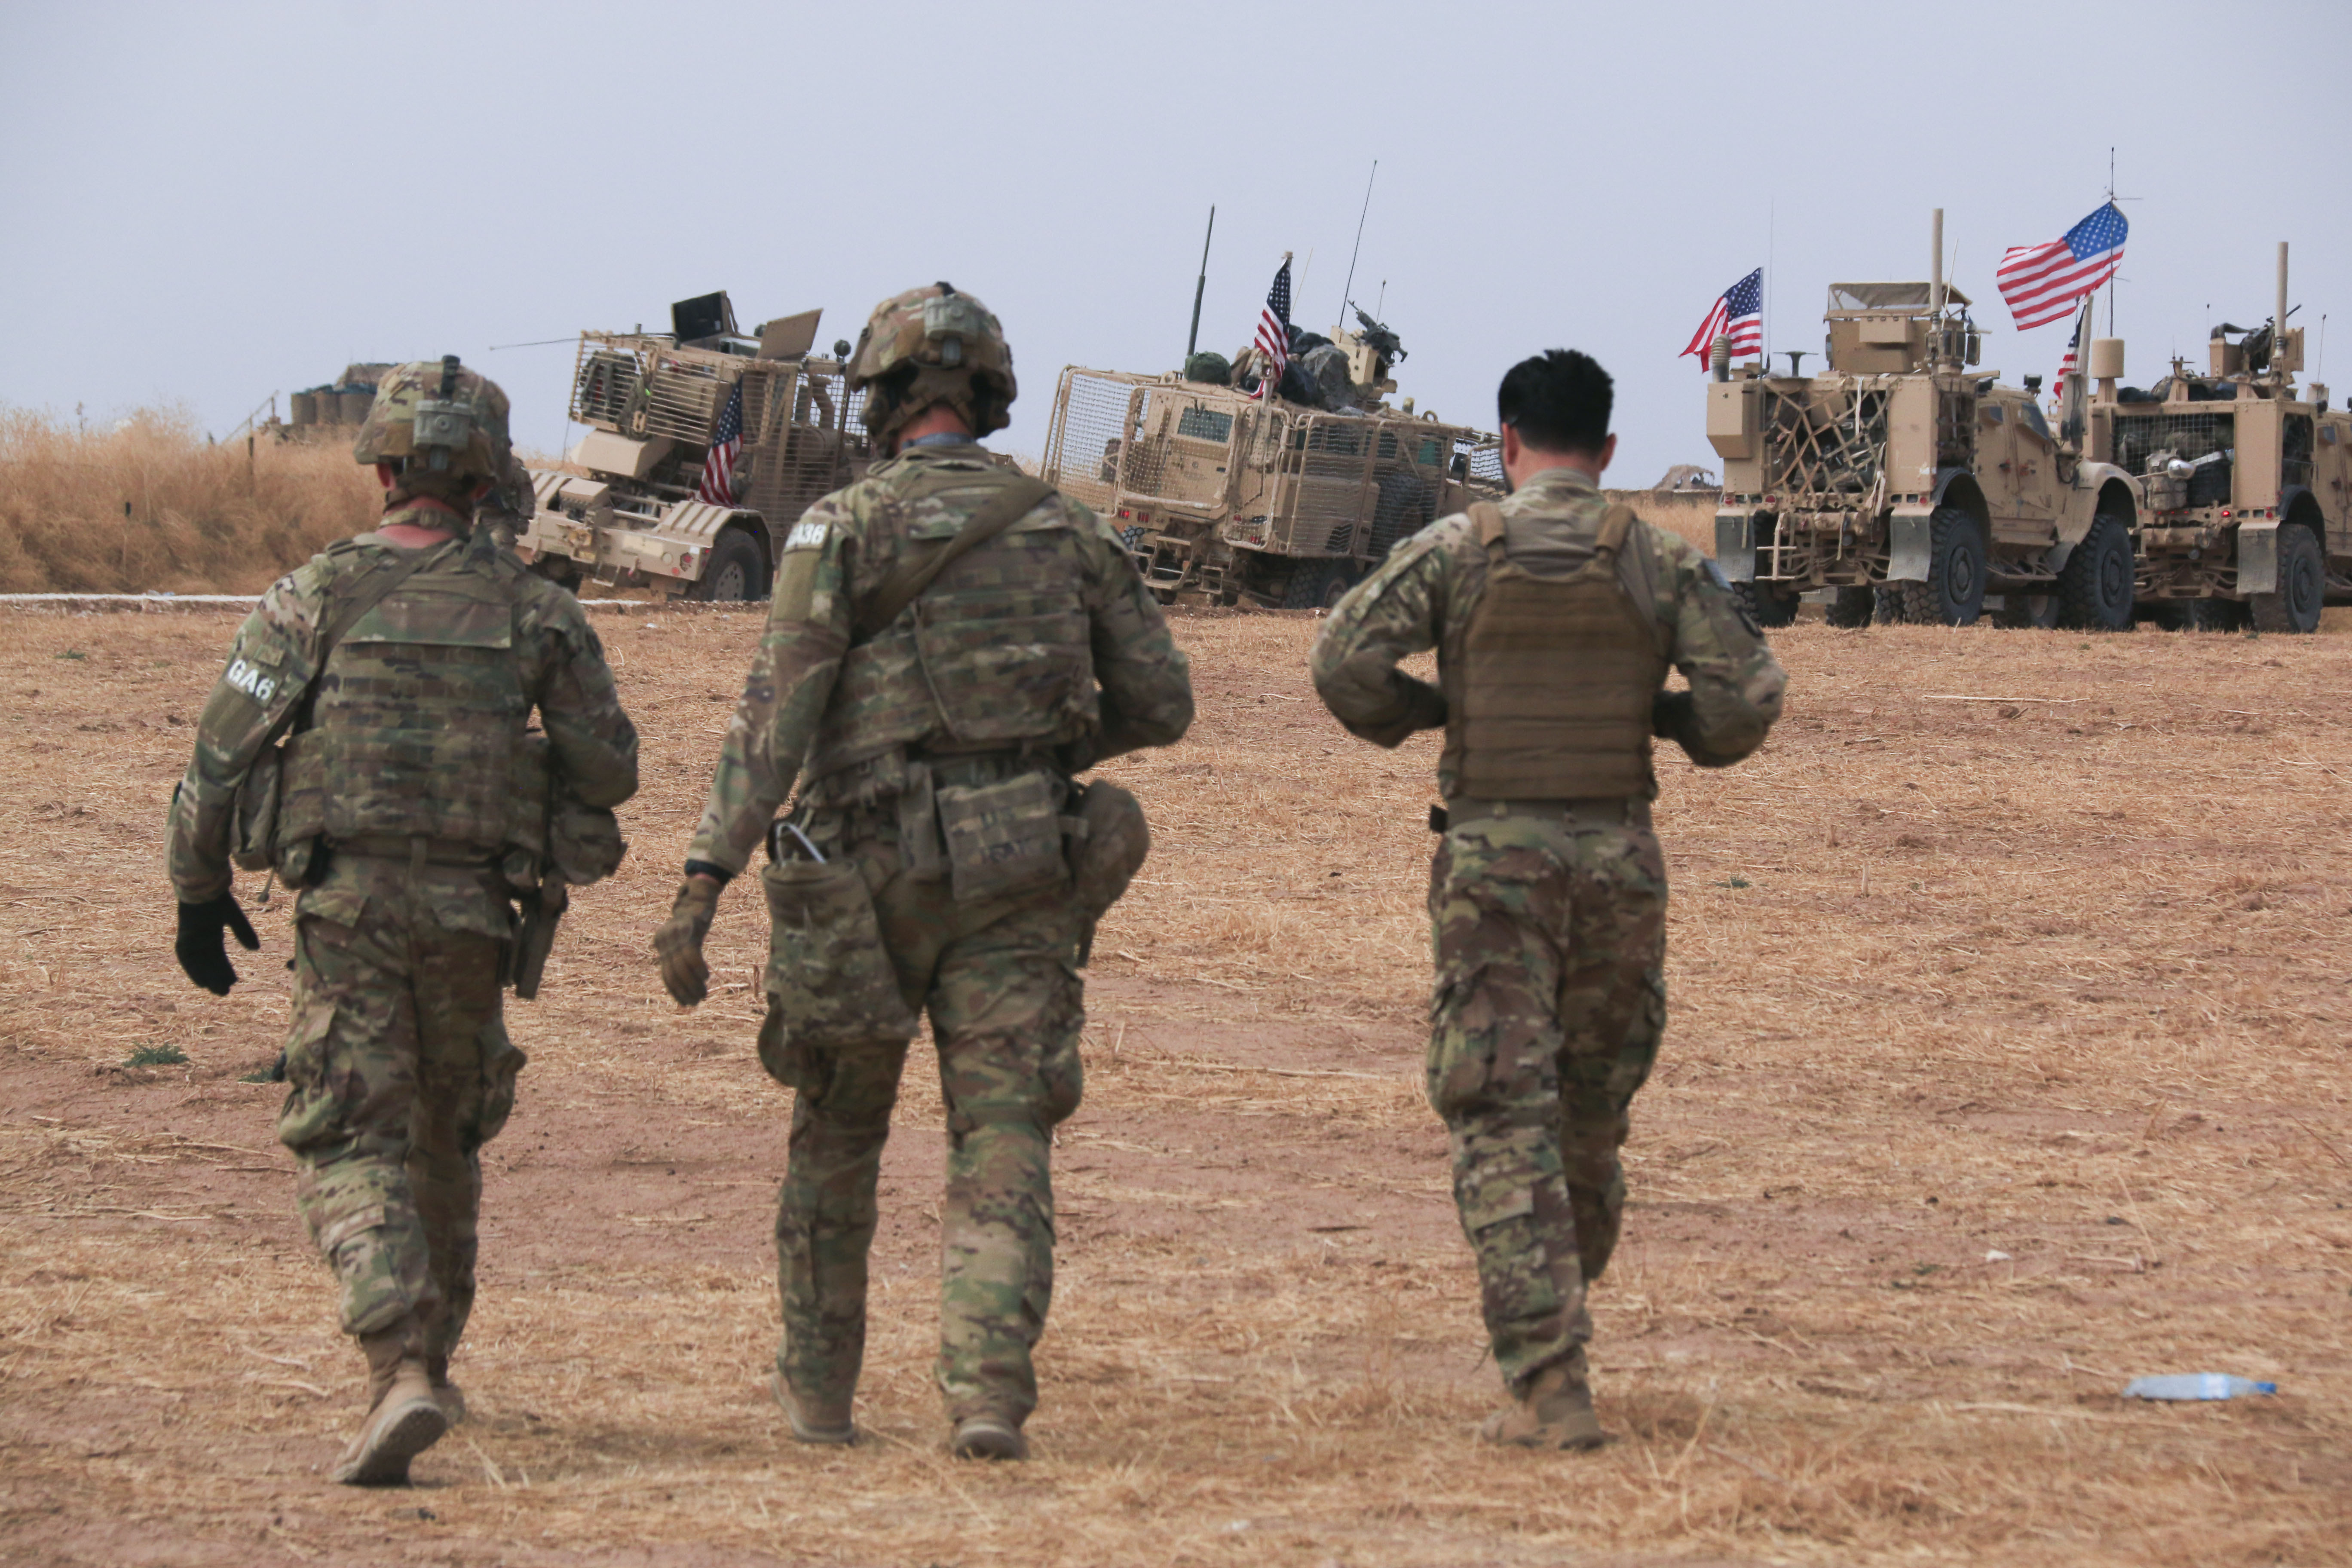 Hadgyakorlatra érkezik 130 amerikai katona negyven harcjárművel